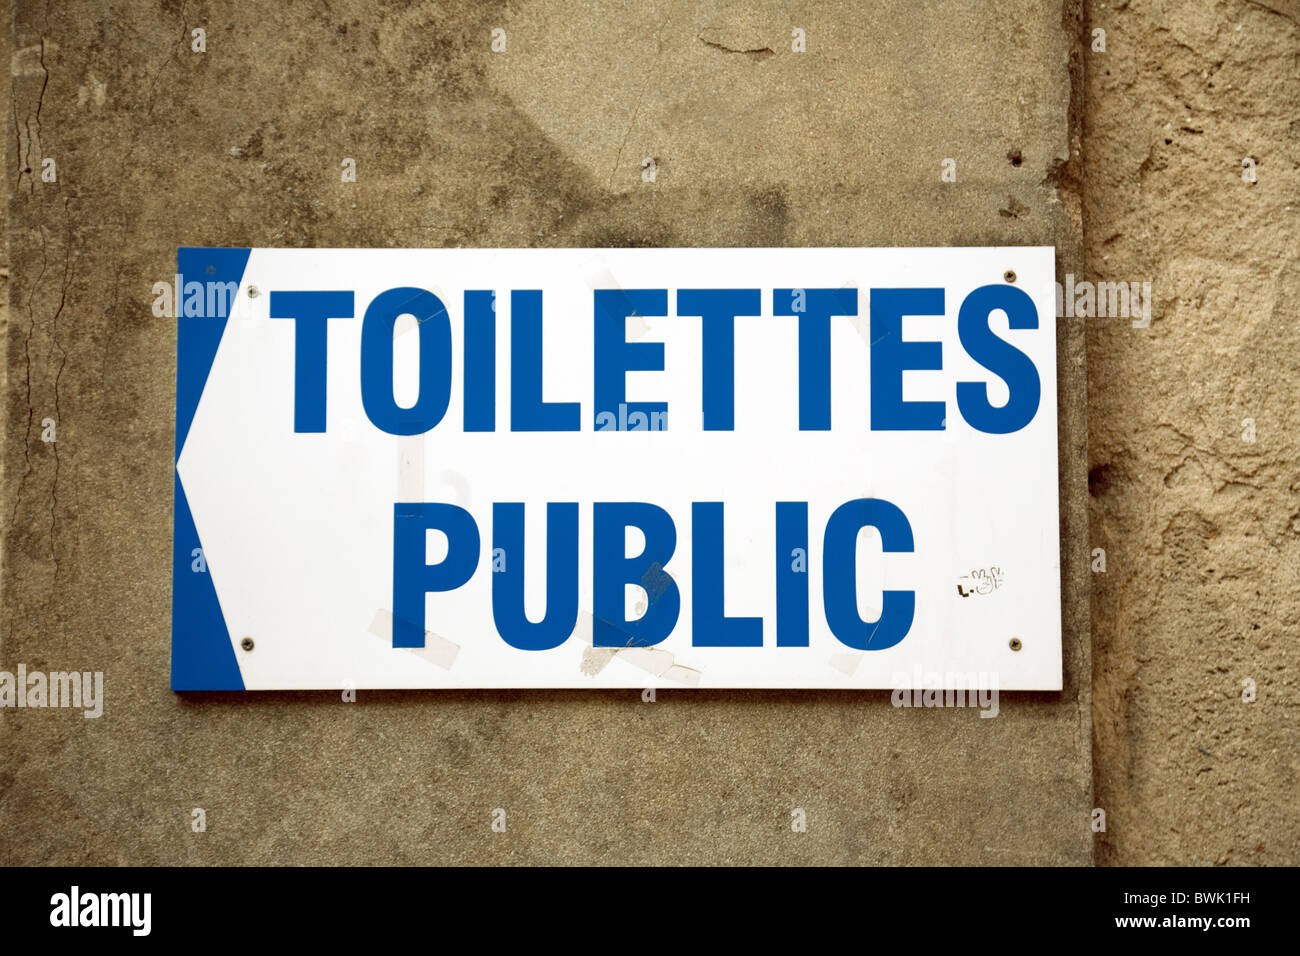 Toilettes publiques signe, Meaux, Ile de France France Banque D'Images